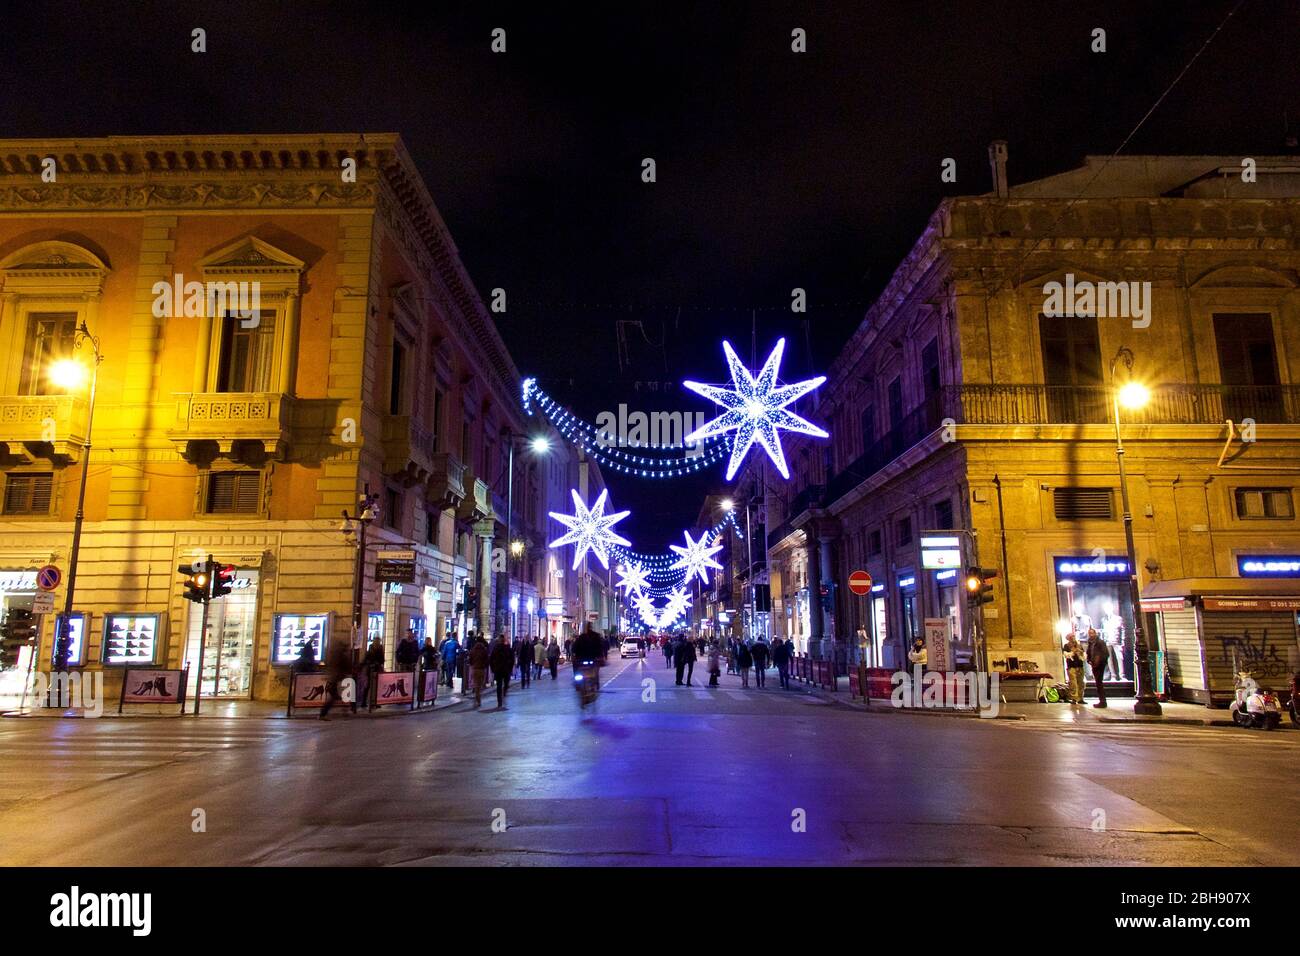 Palermo, Altstadt, Piazza Verdi beim Teatro Massimo, weihnachtlich geschmückte und beleuchtete Einkaufsstraße am Abend Stock Photo